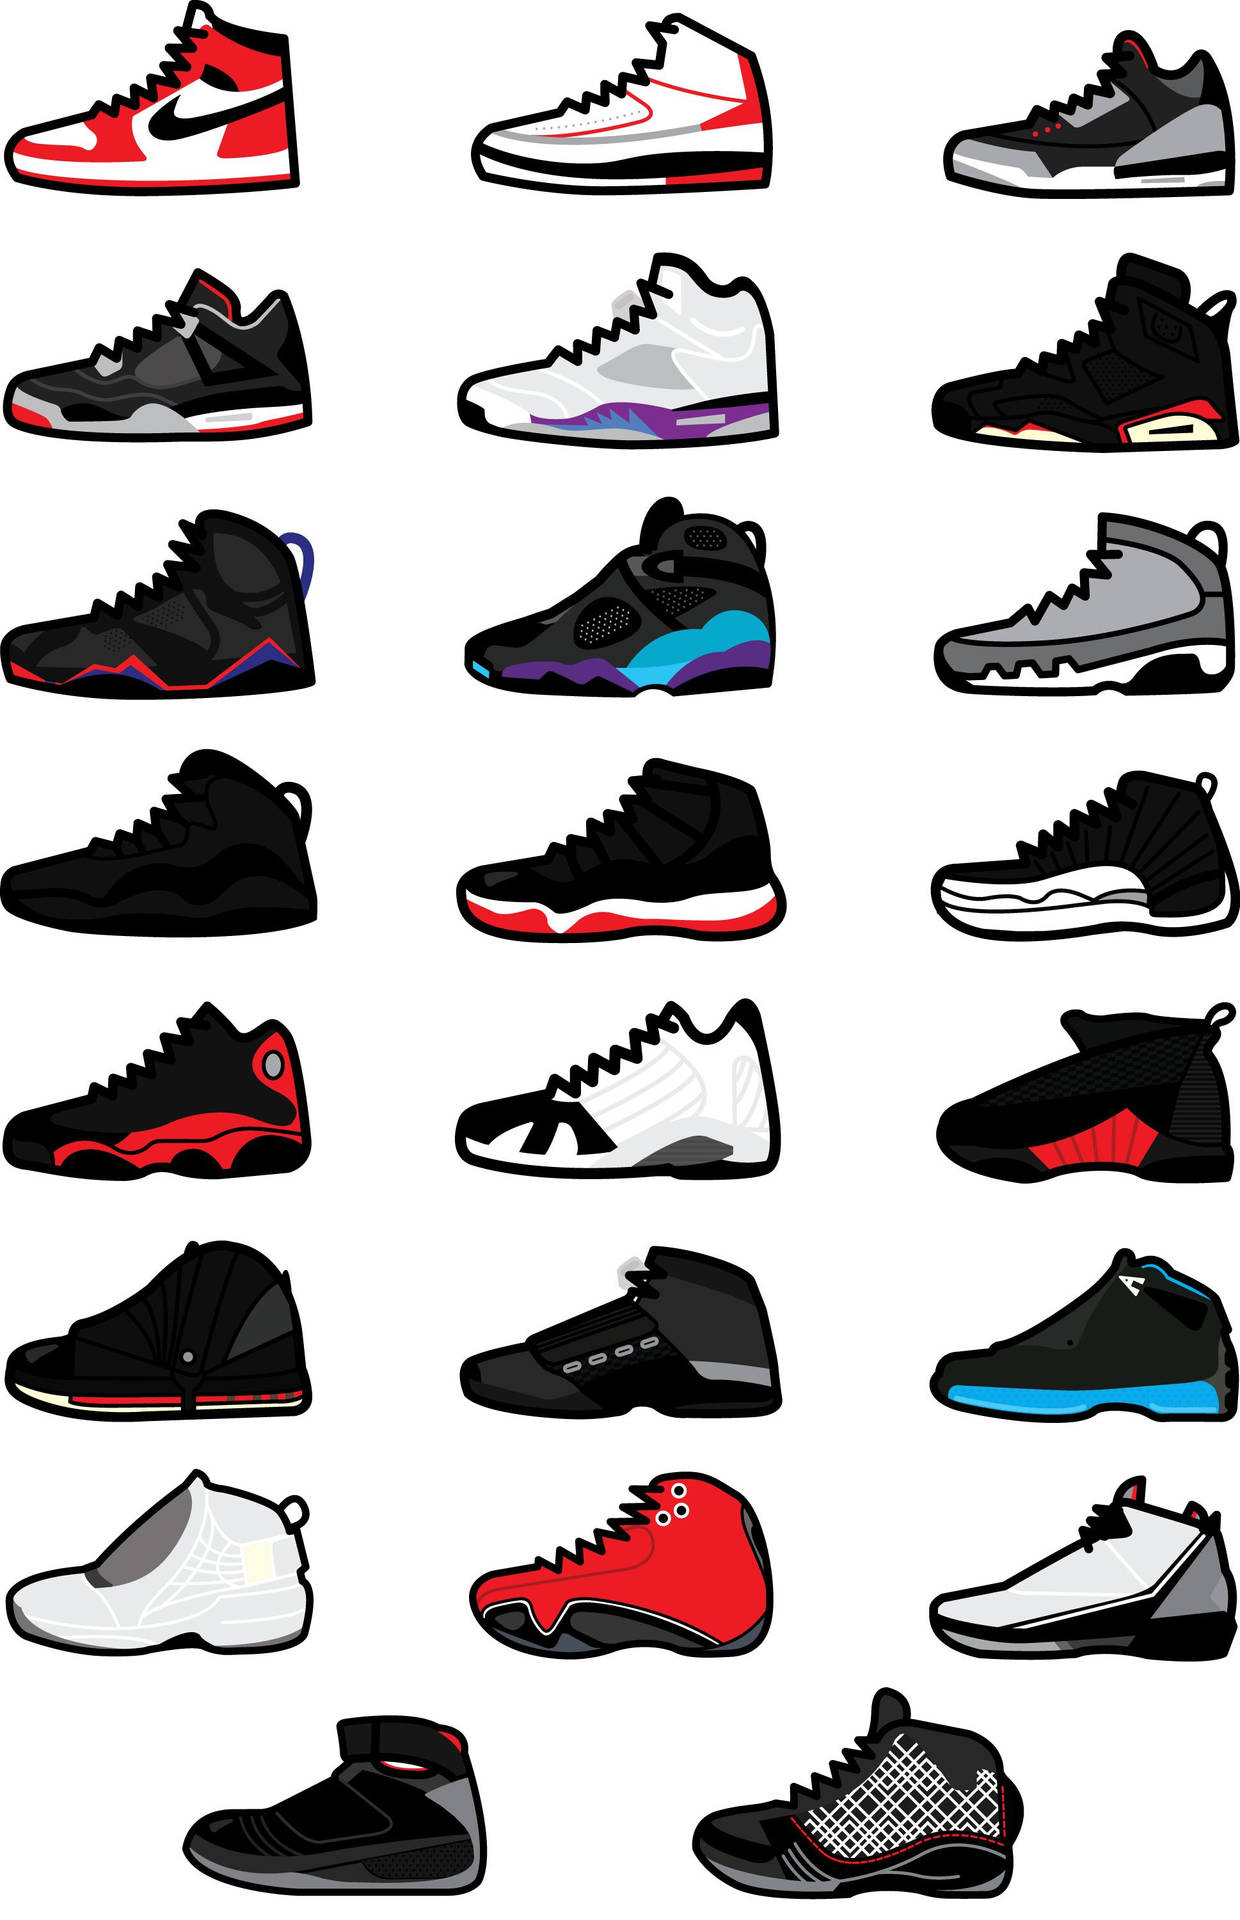 Sneaker Air Jordan Designs